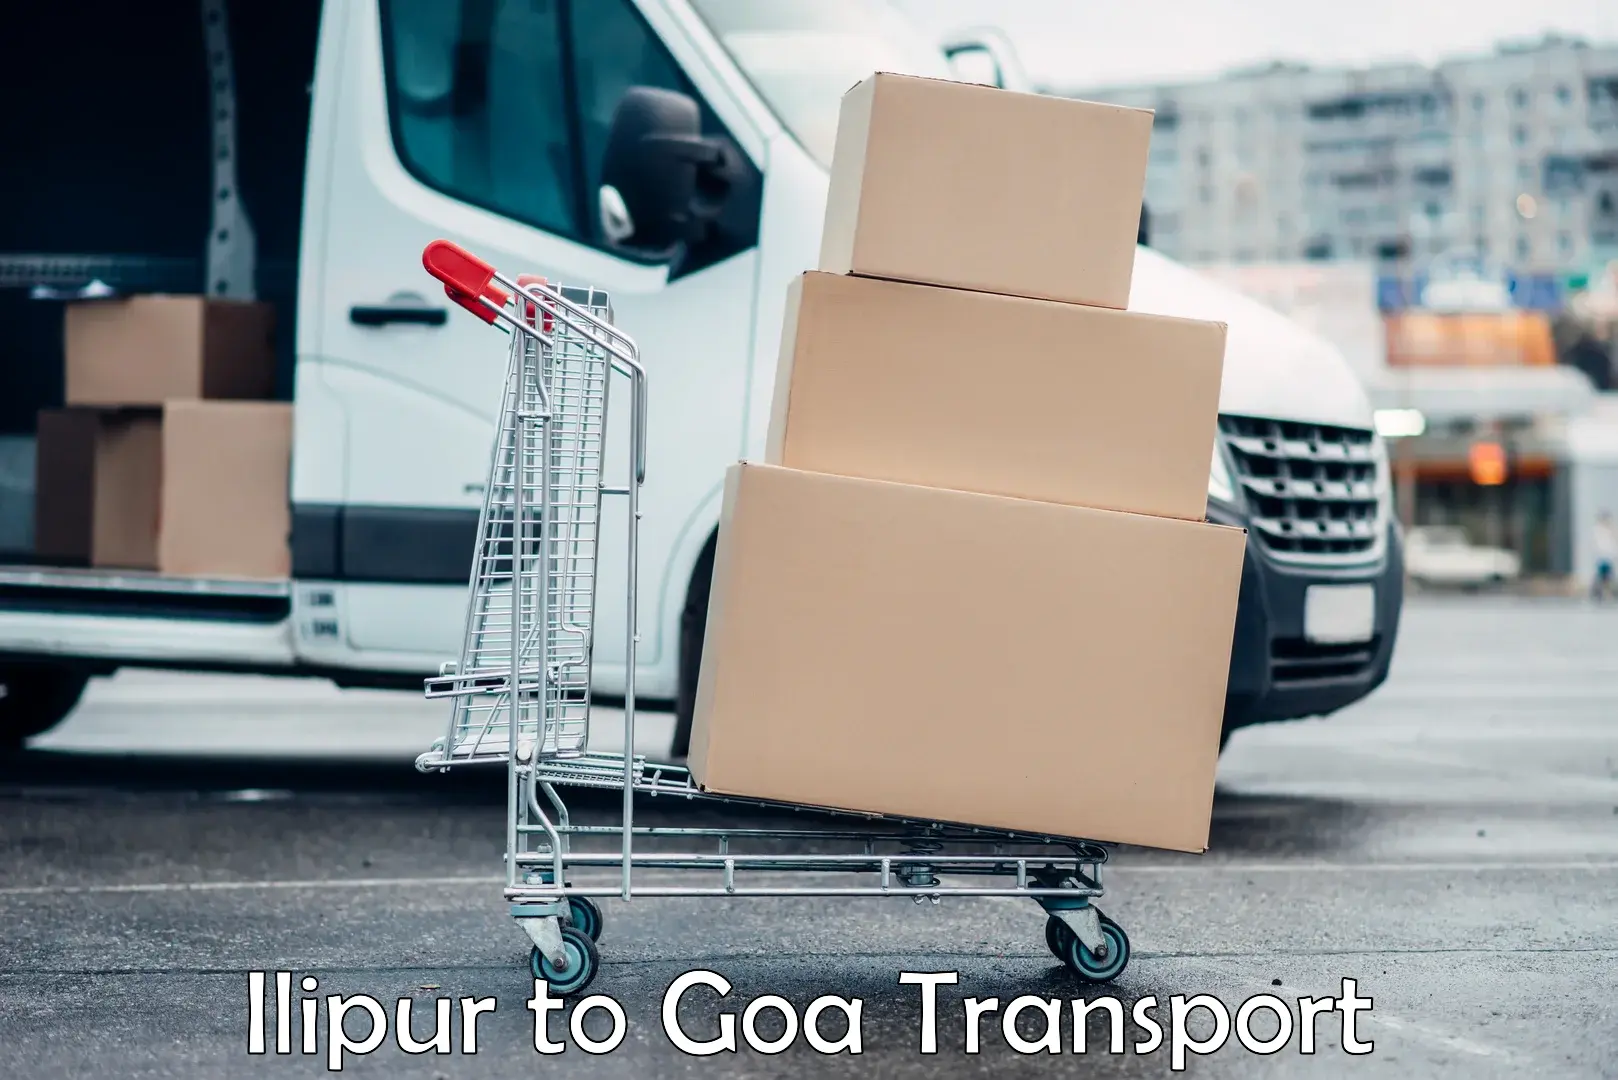 Parcel transport services Ilipur to Goa University